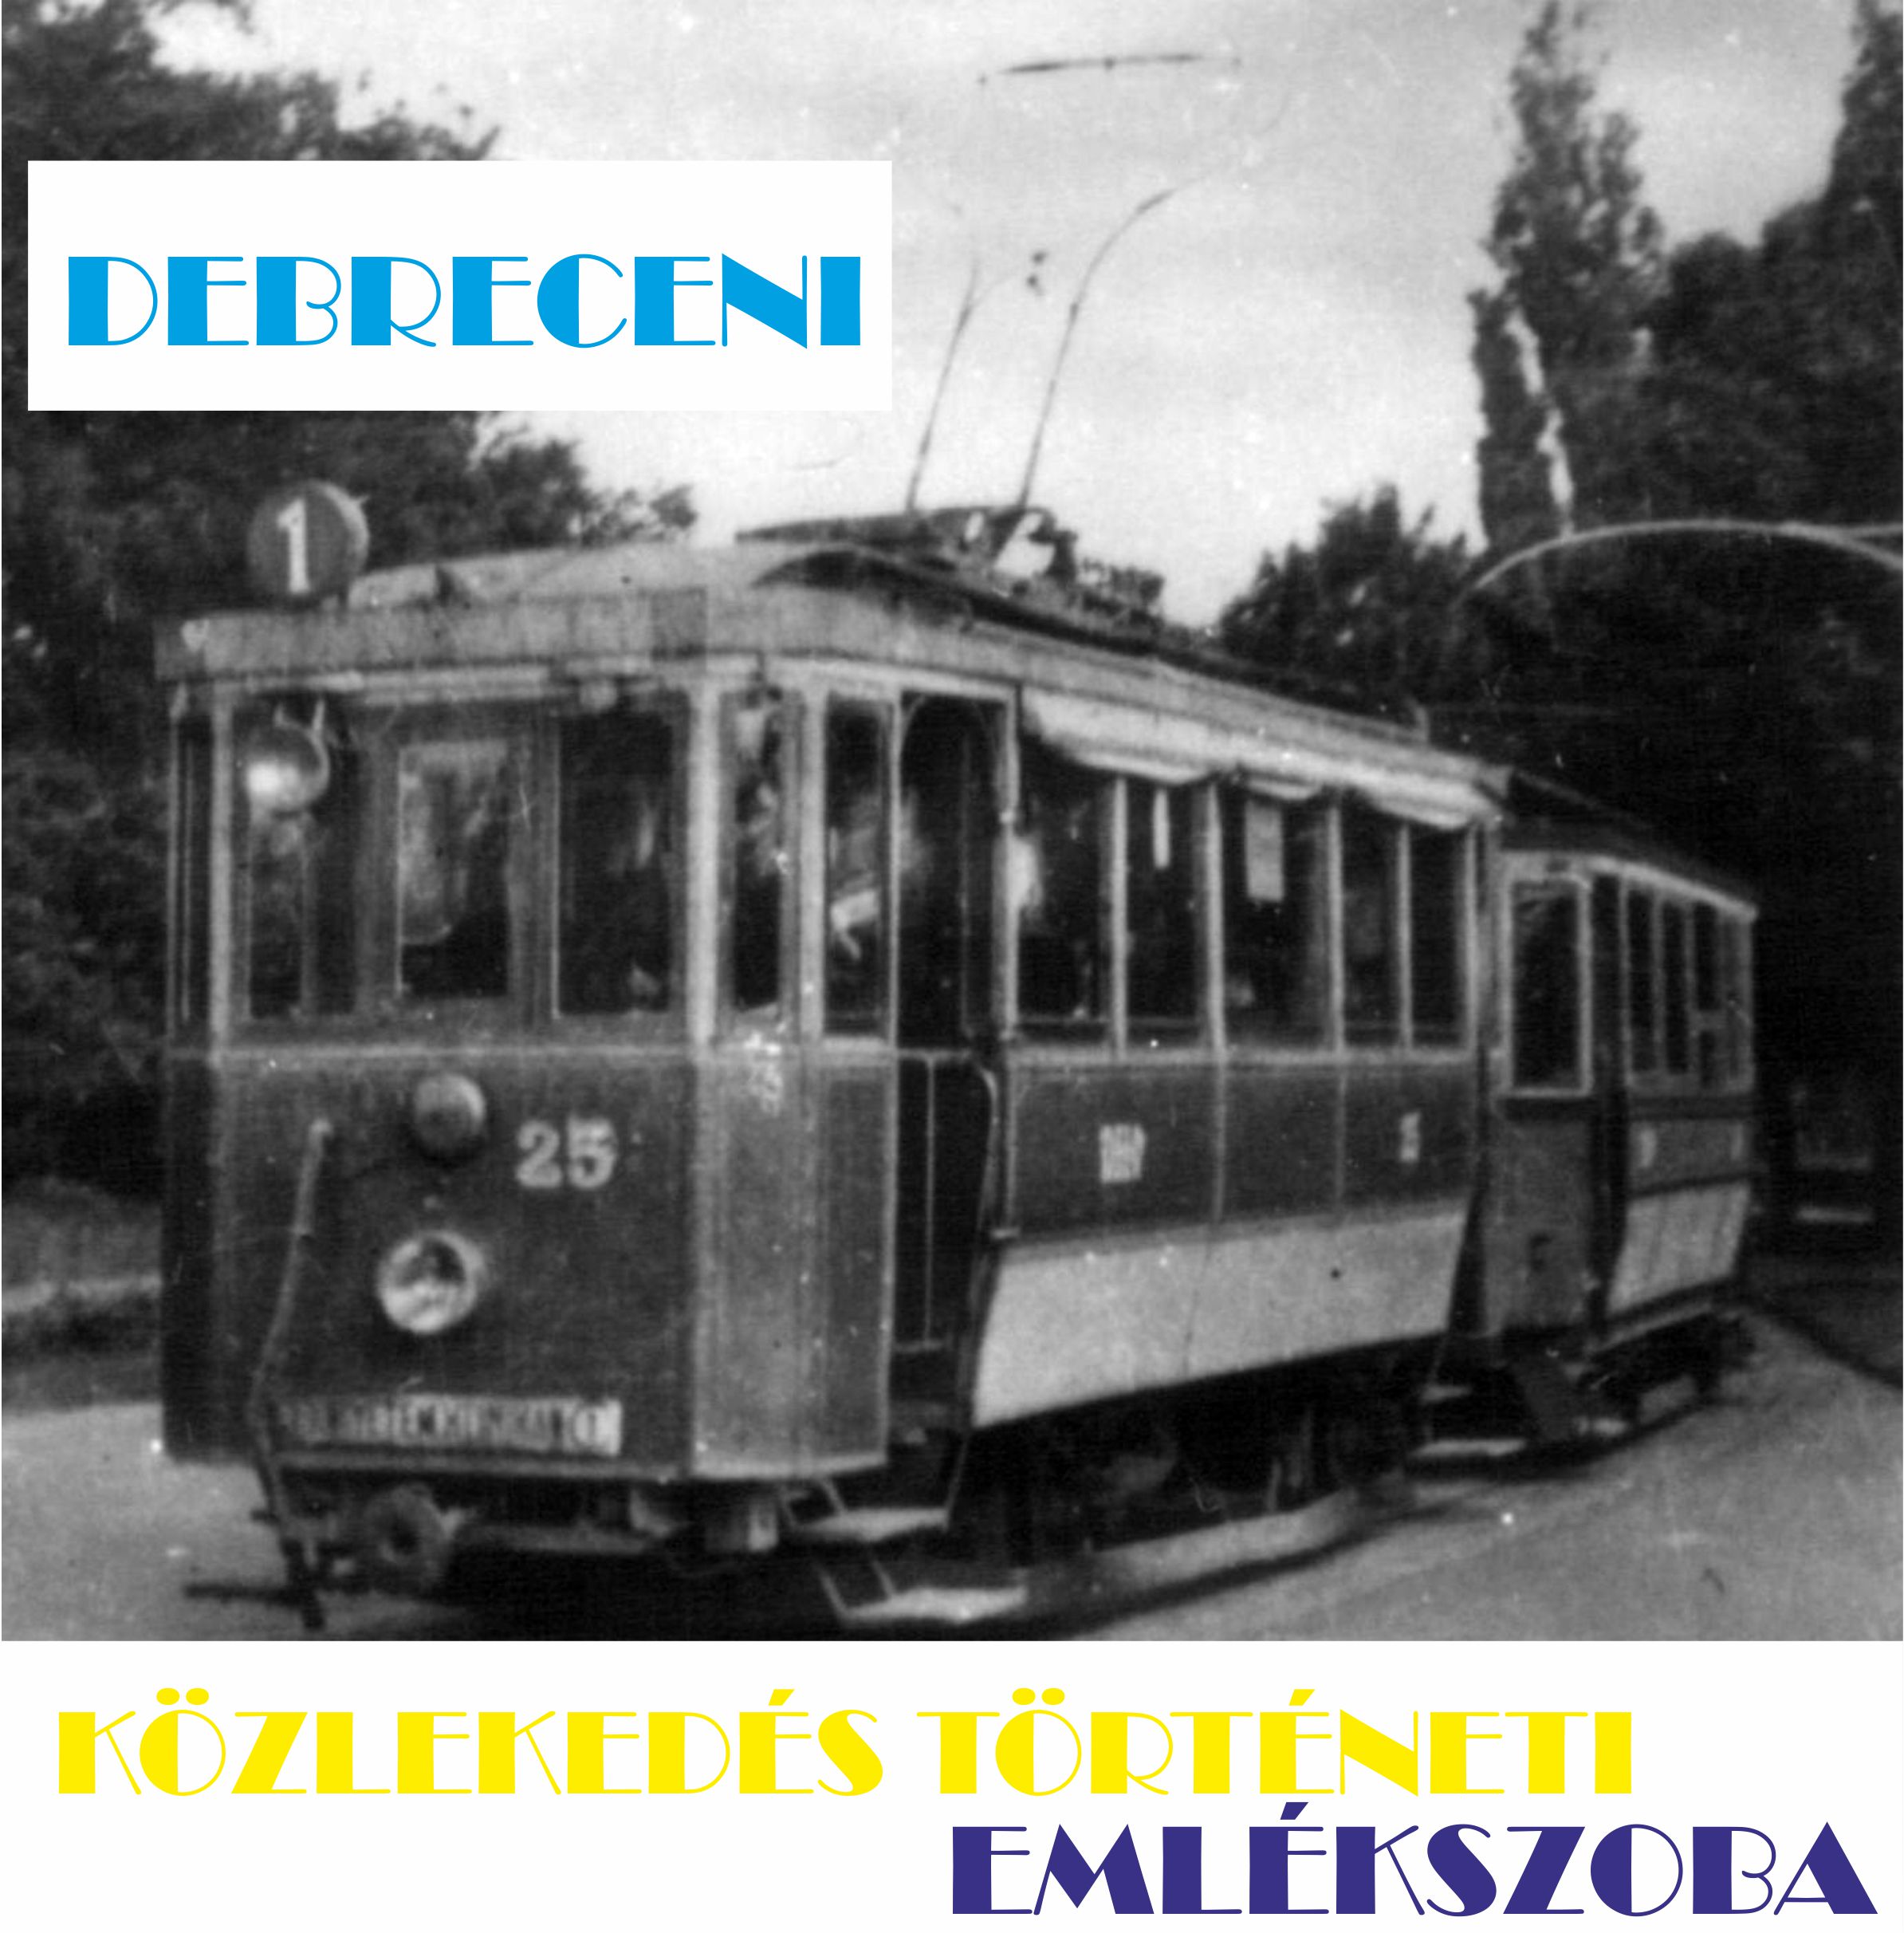 Debreceni Közlekedéstörténeti Emlékszoba